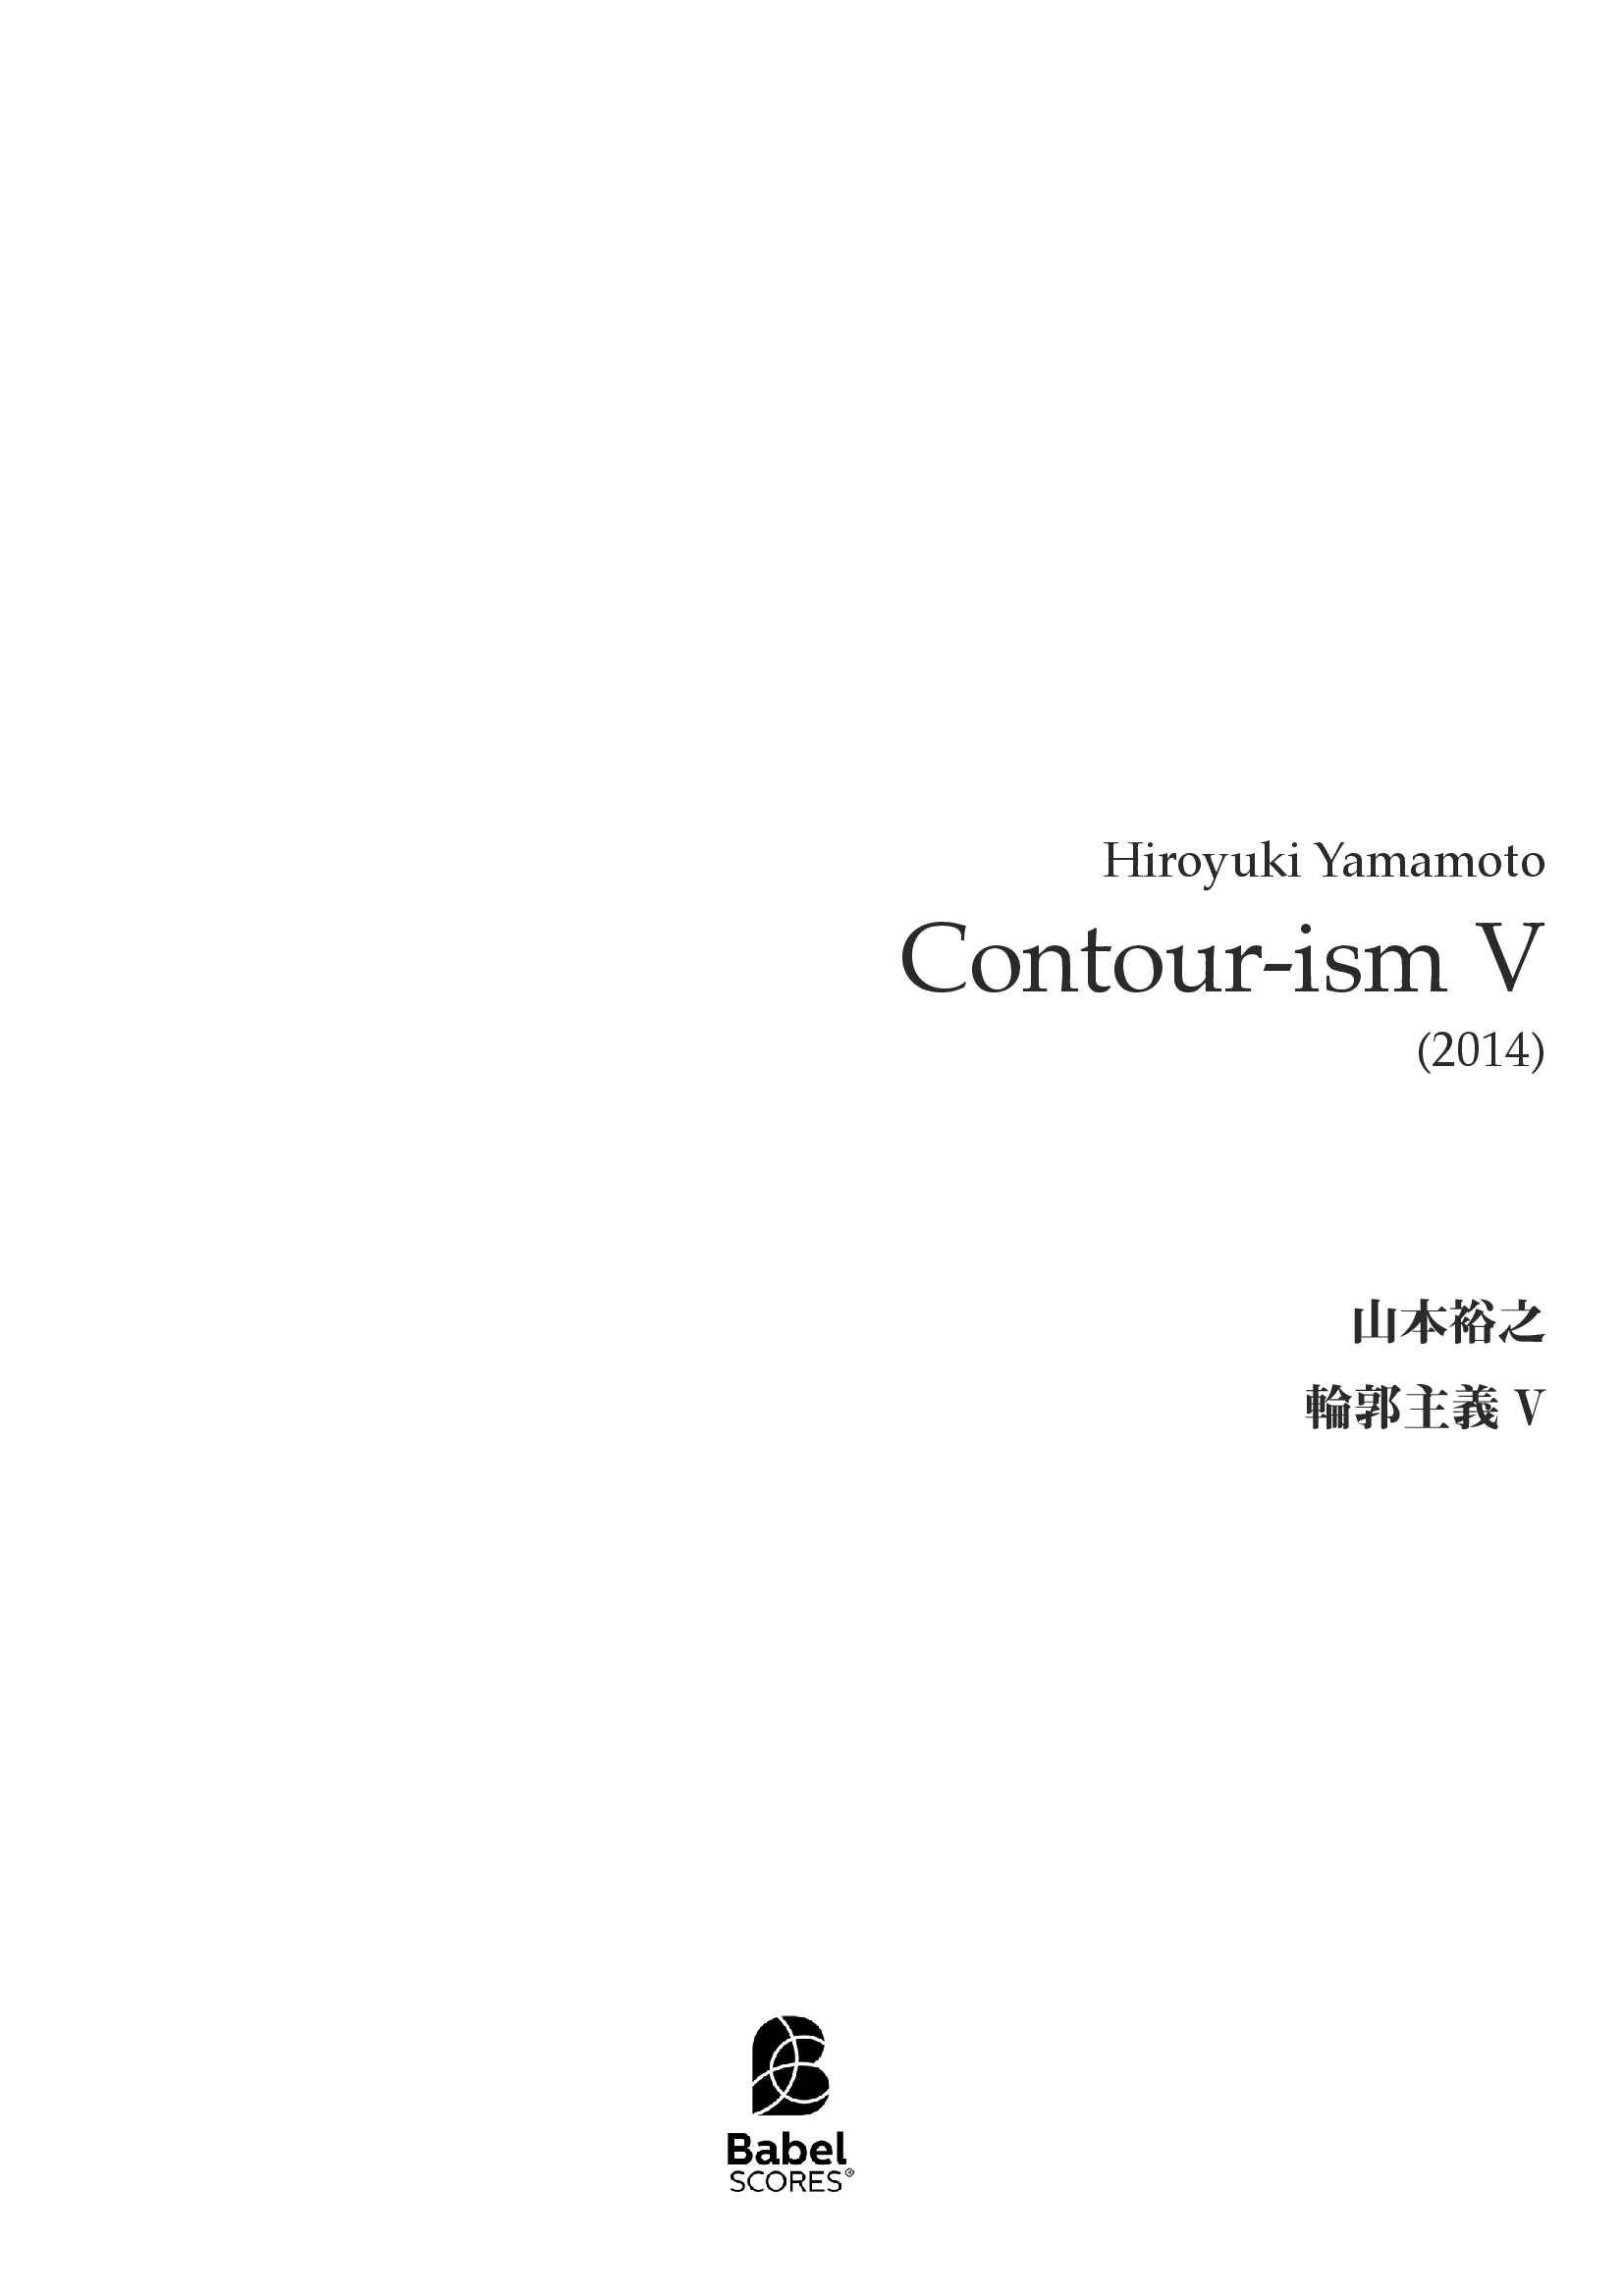 contourism V A4 z 2 289 1 505